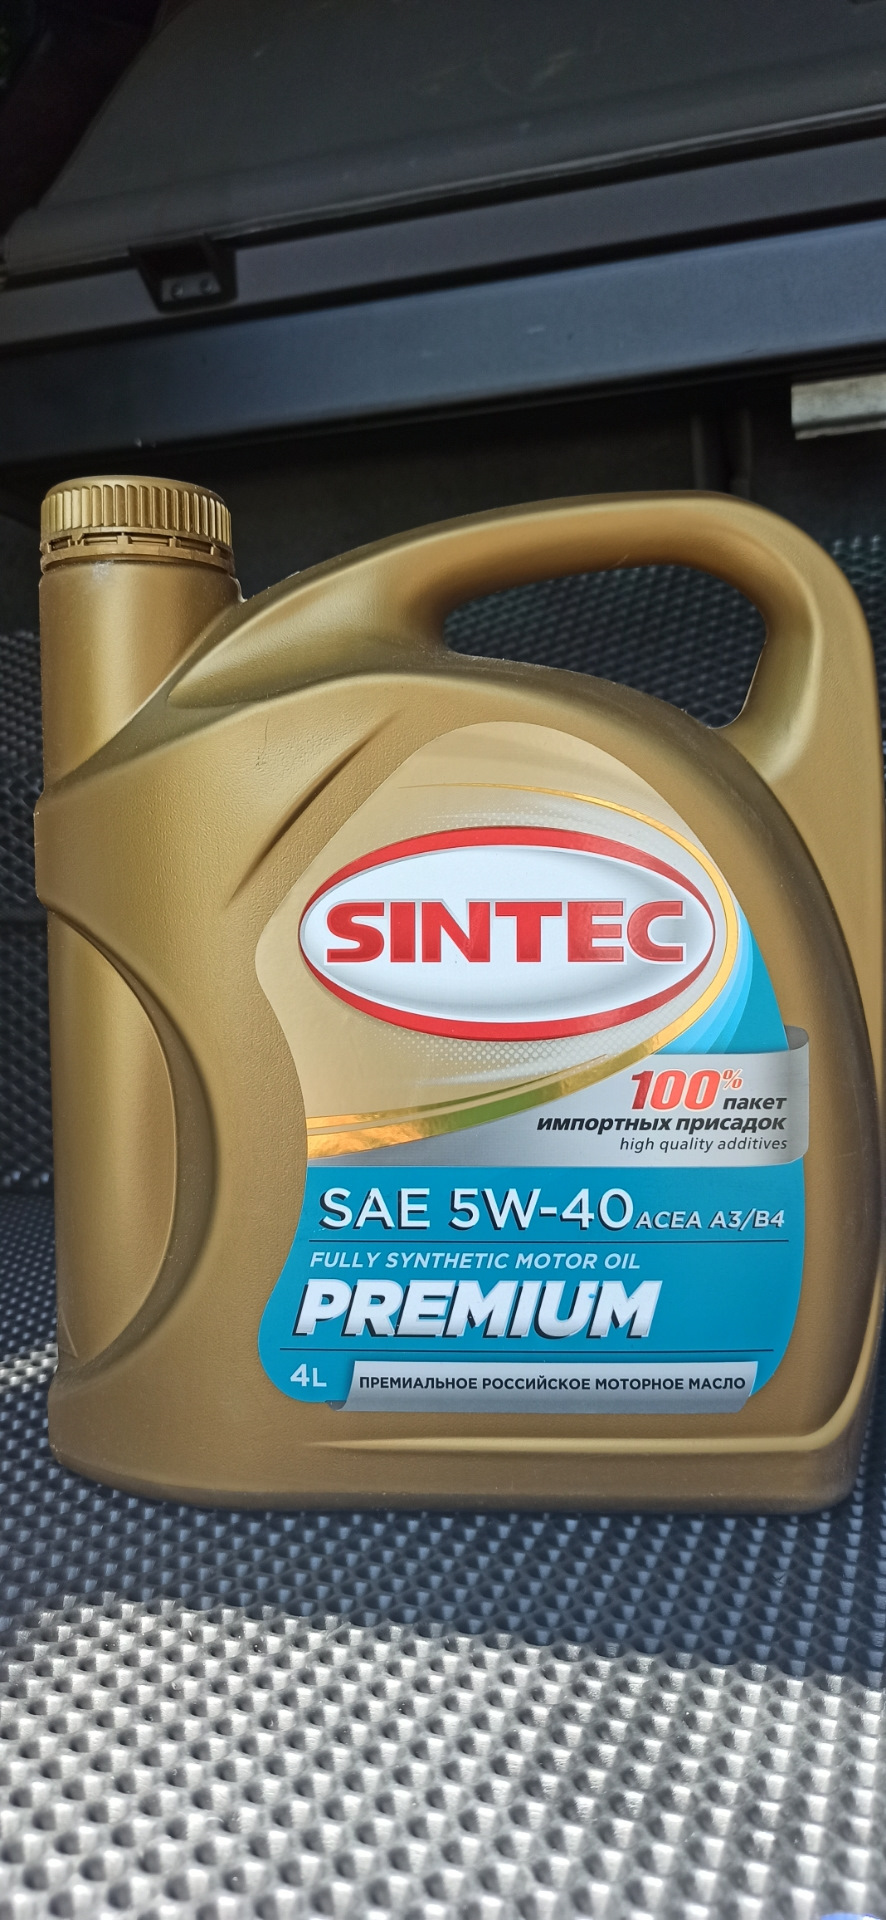 Sintec Premium 5w-40. Синтек премиум 9000 5w40. Синтек турбодизель 5/40. Sintec Premium 9000 5w-40 a3/b4 SN/CF.